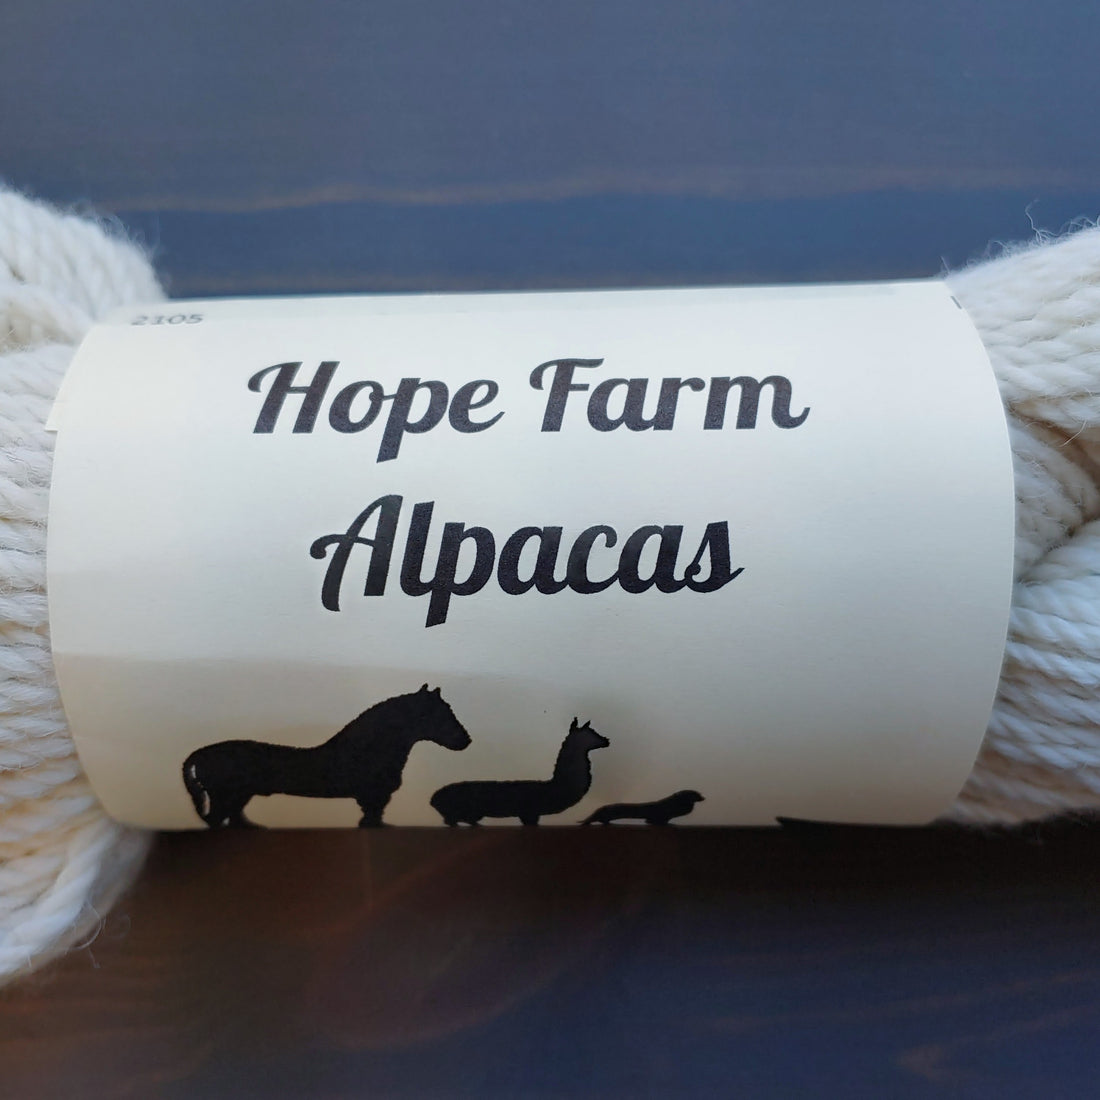  Hope Farms Alpacas